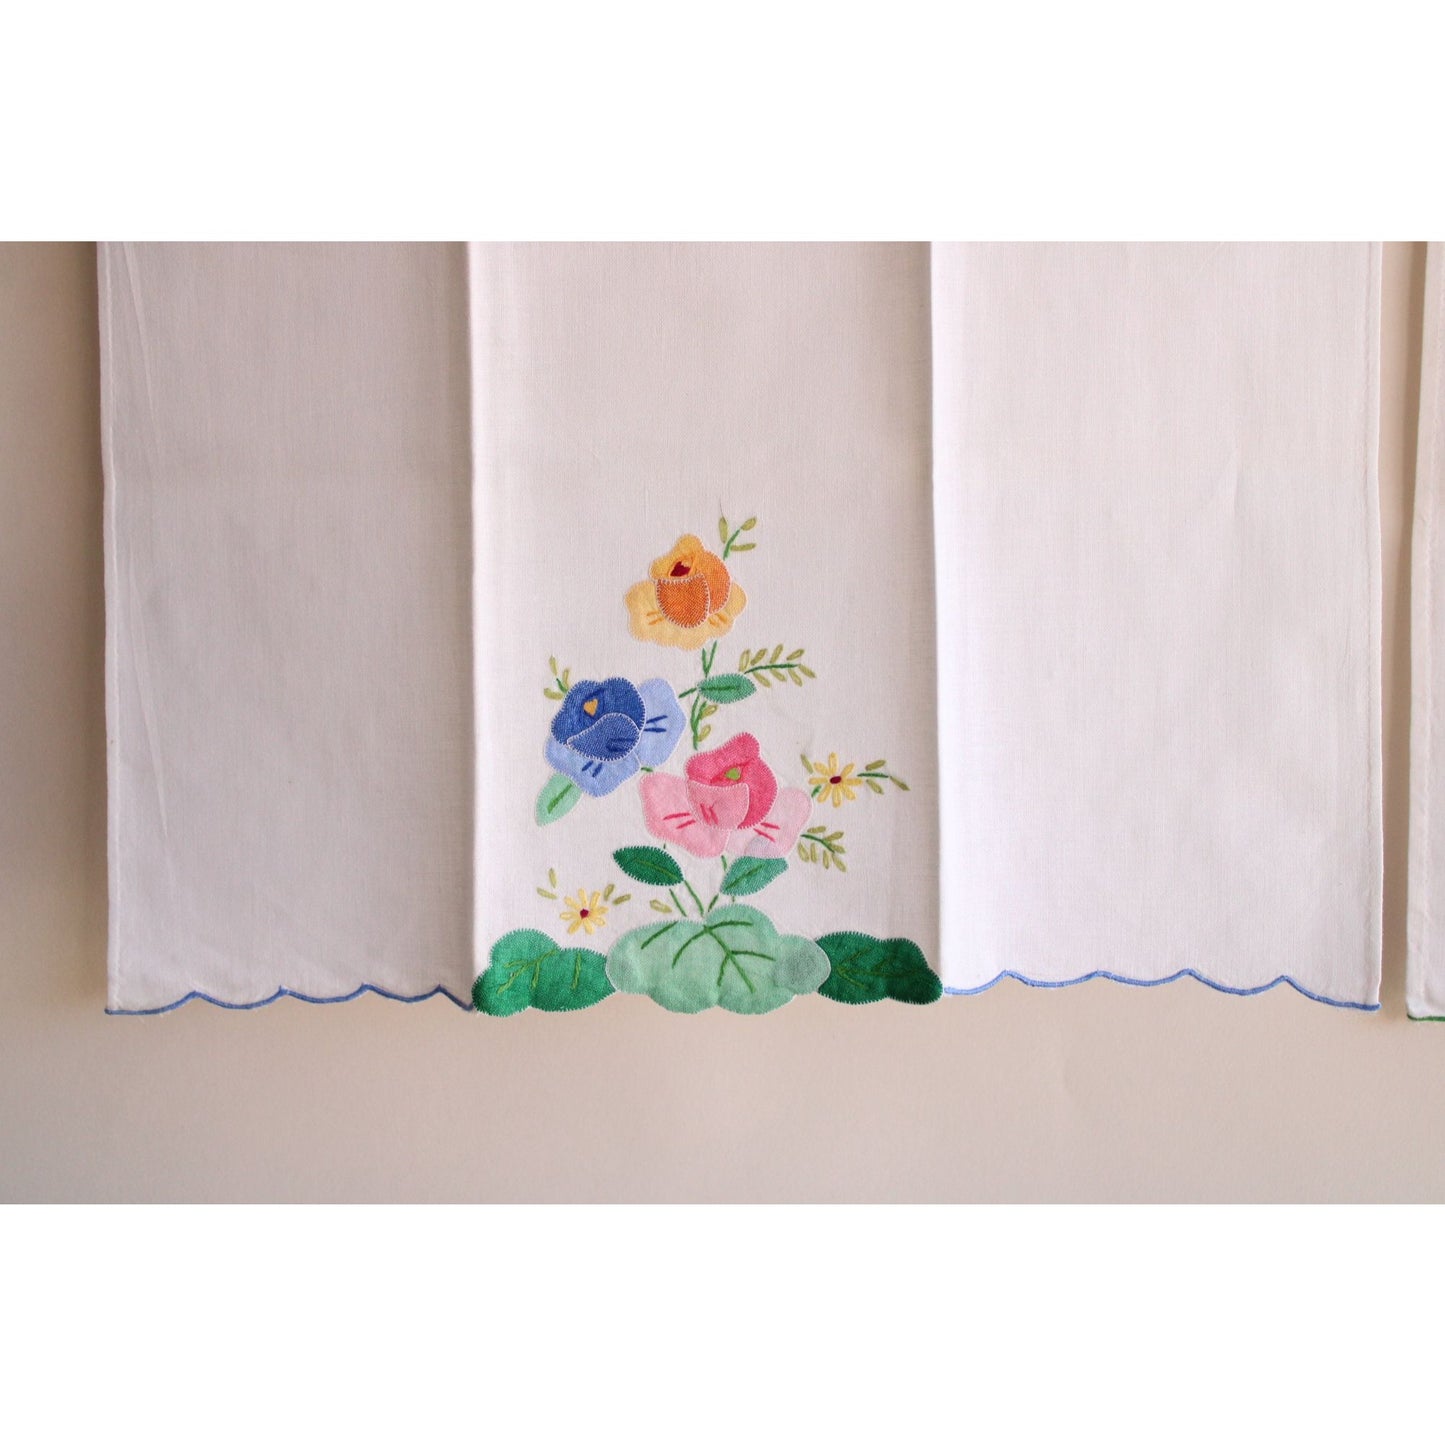 Vintage 1980s Tea Towel Pair With Cutwork Flowers